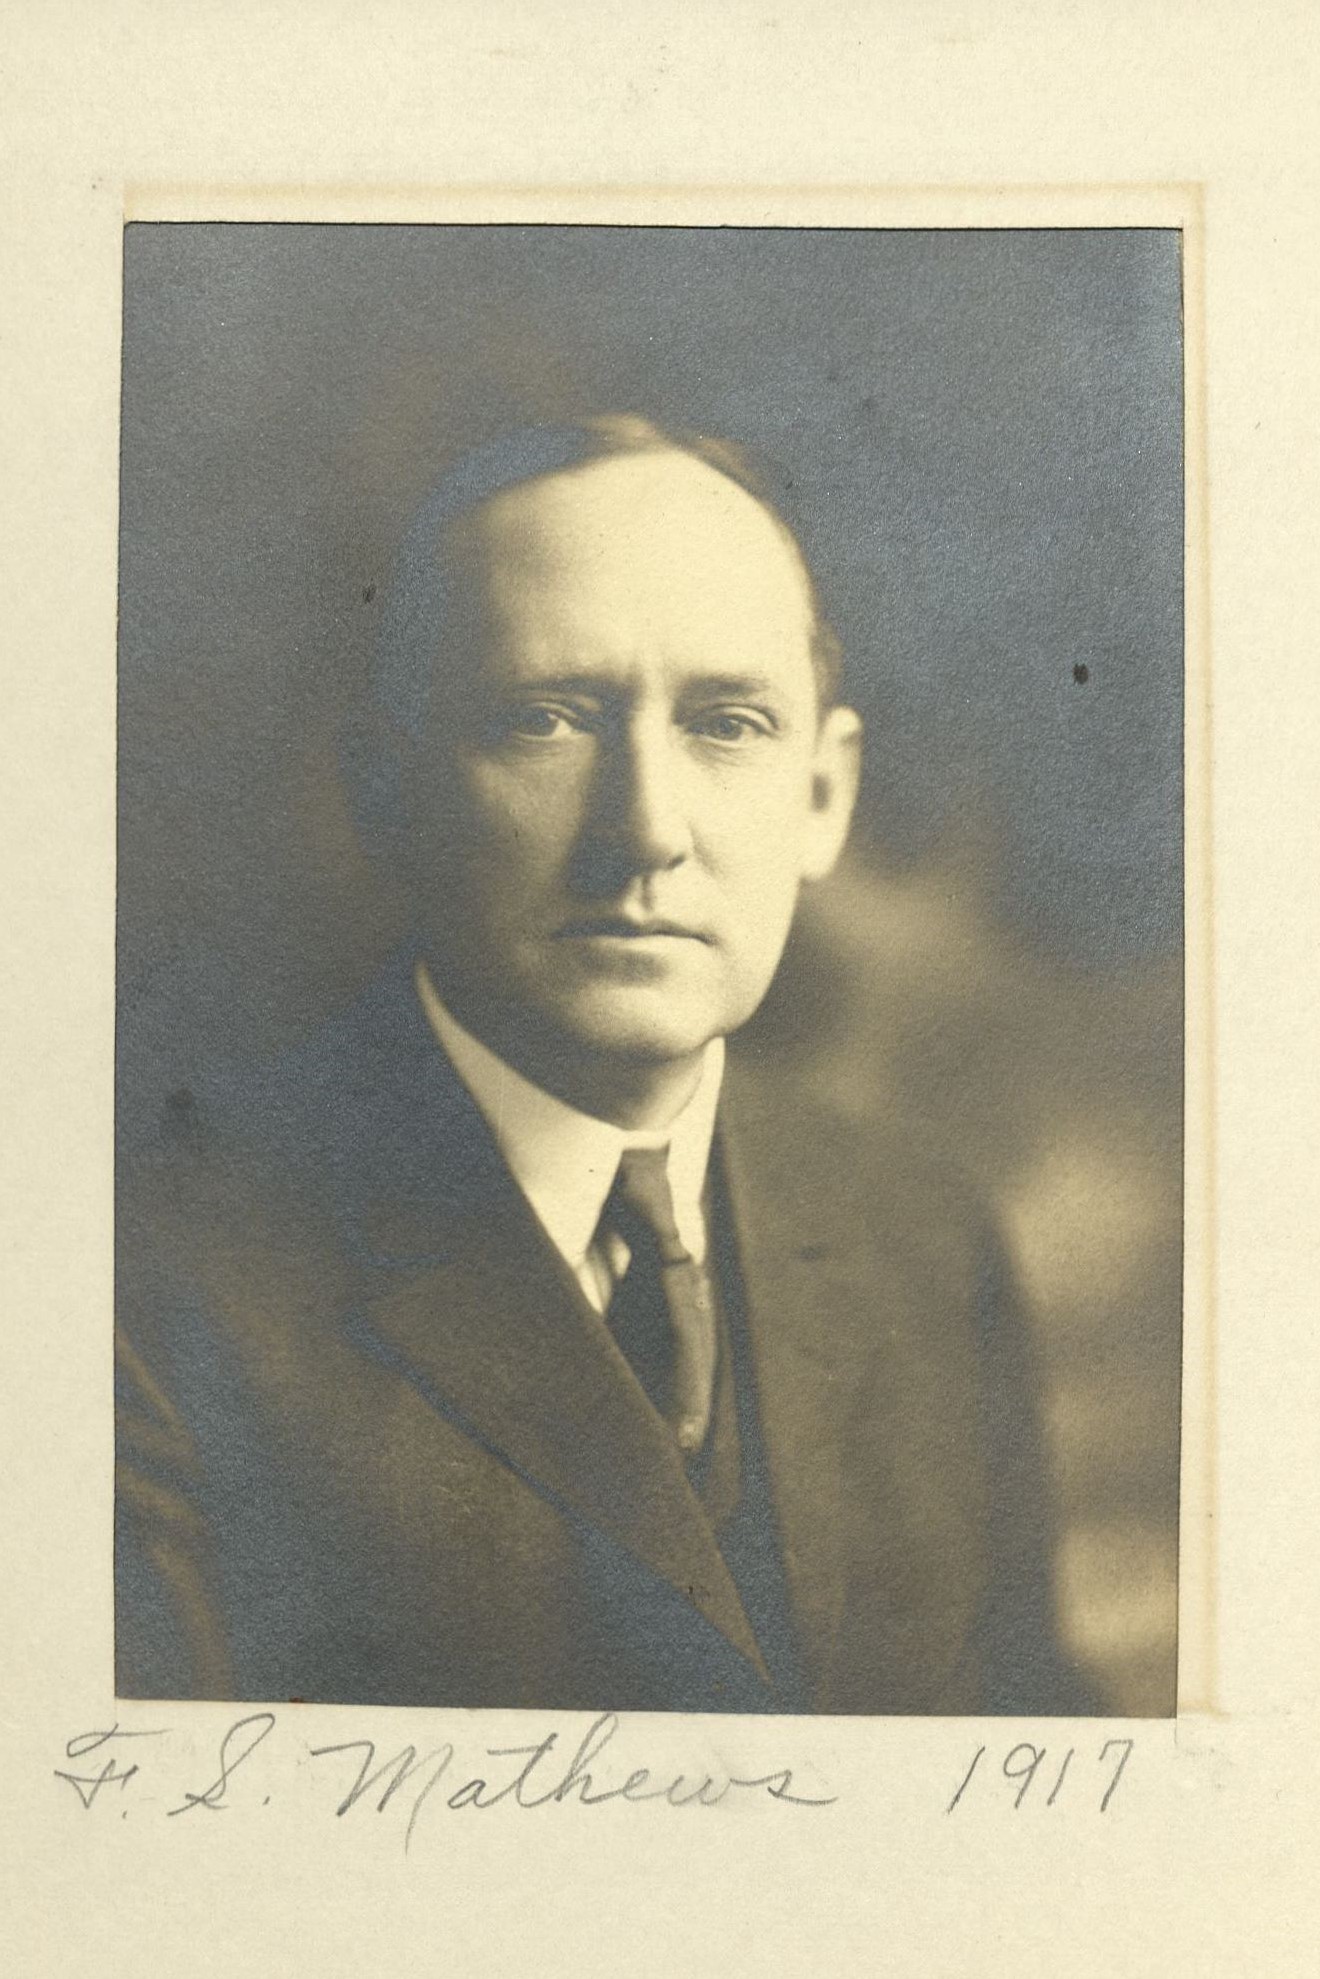 Member portrait of Francis S. Mathews